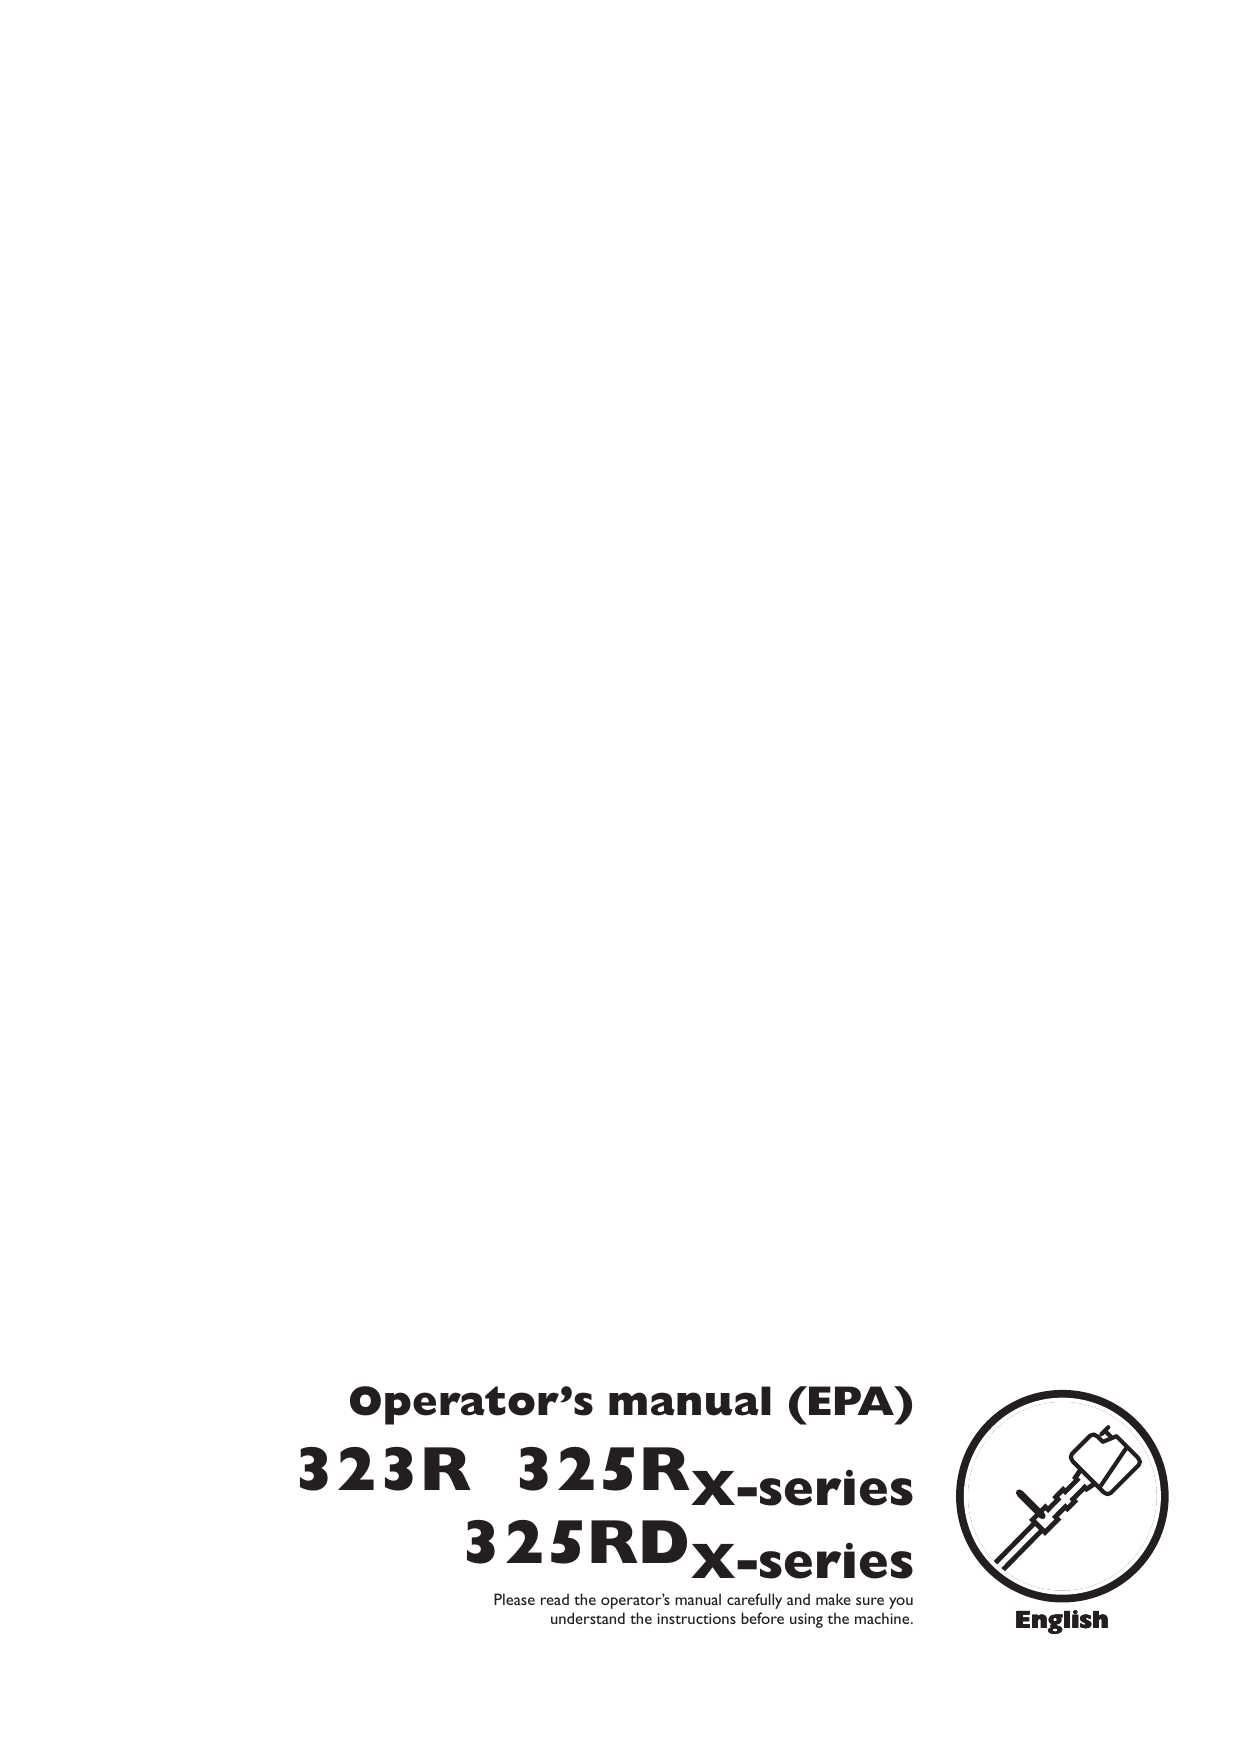 Husqvarna 323R Users Manual OM, 323 R, 325 R X series, RD EPA, 2009 02